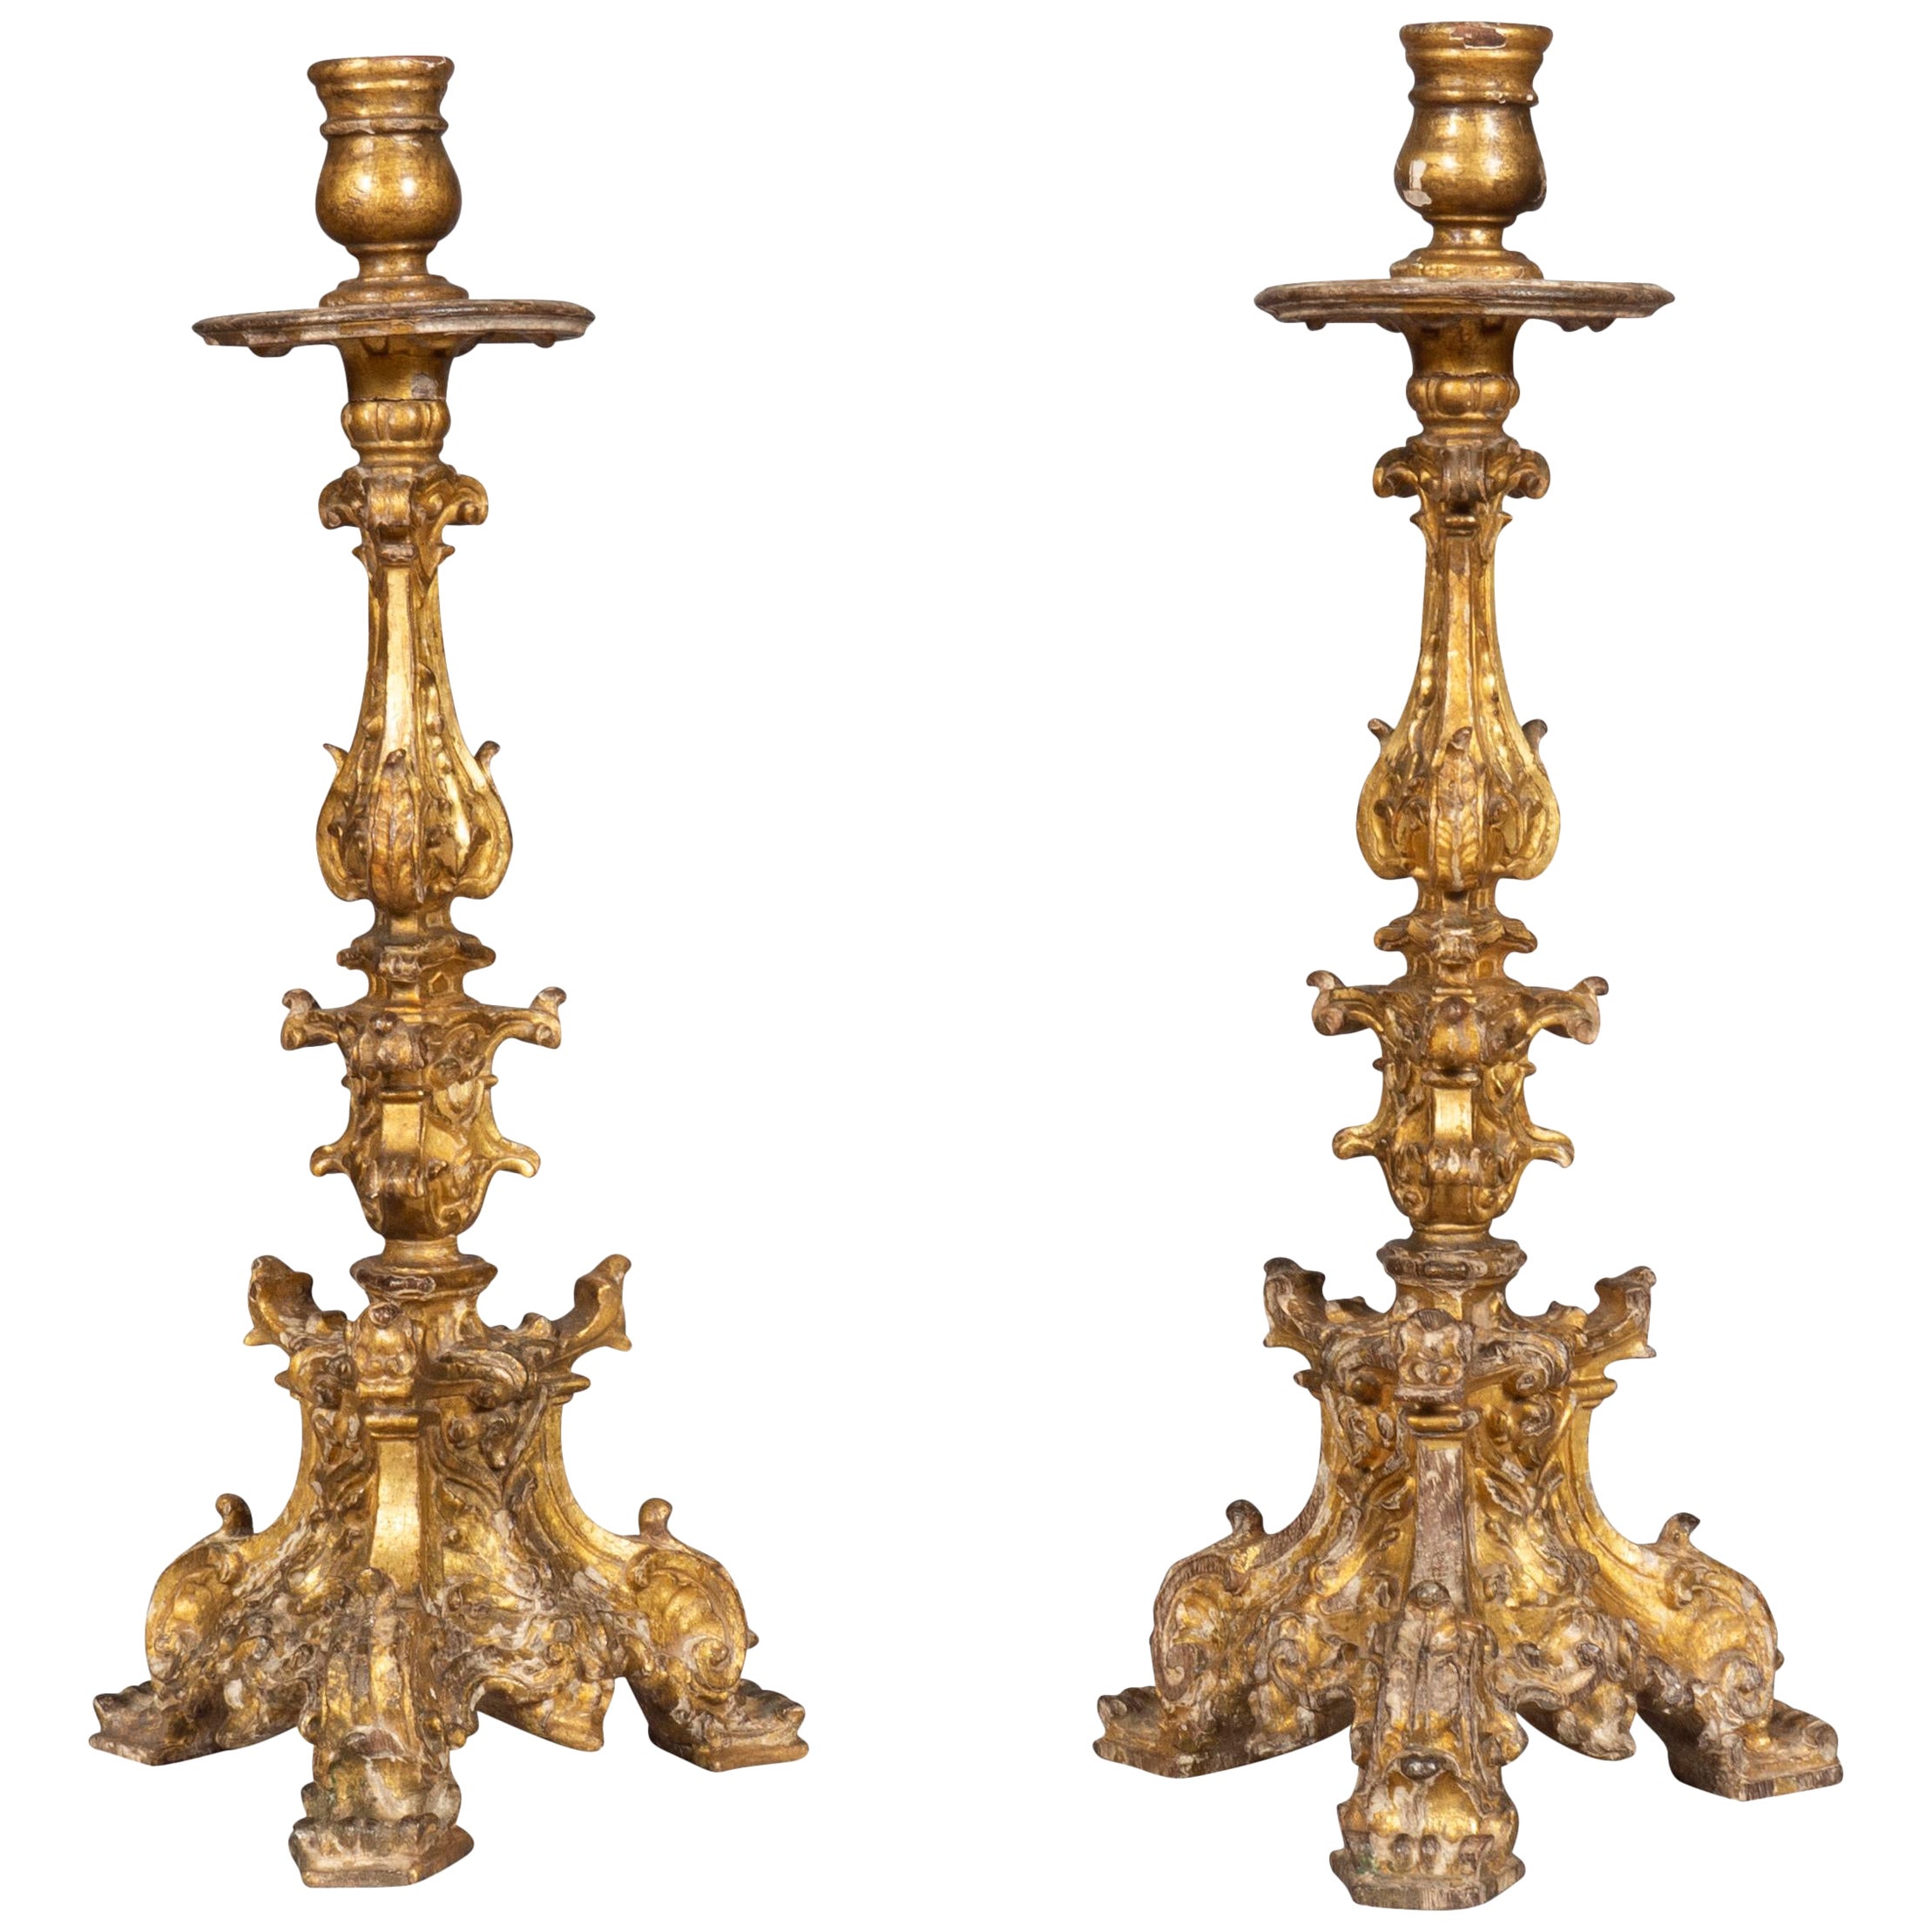 Paire de chandeliers baroques italiens en bois doré